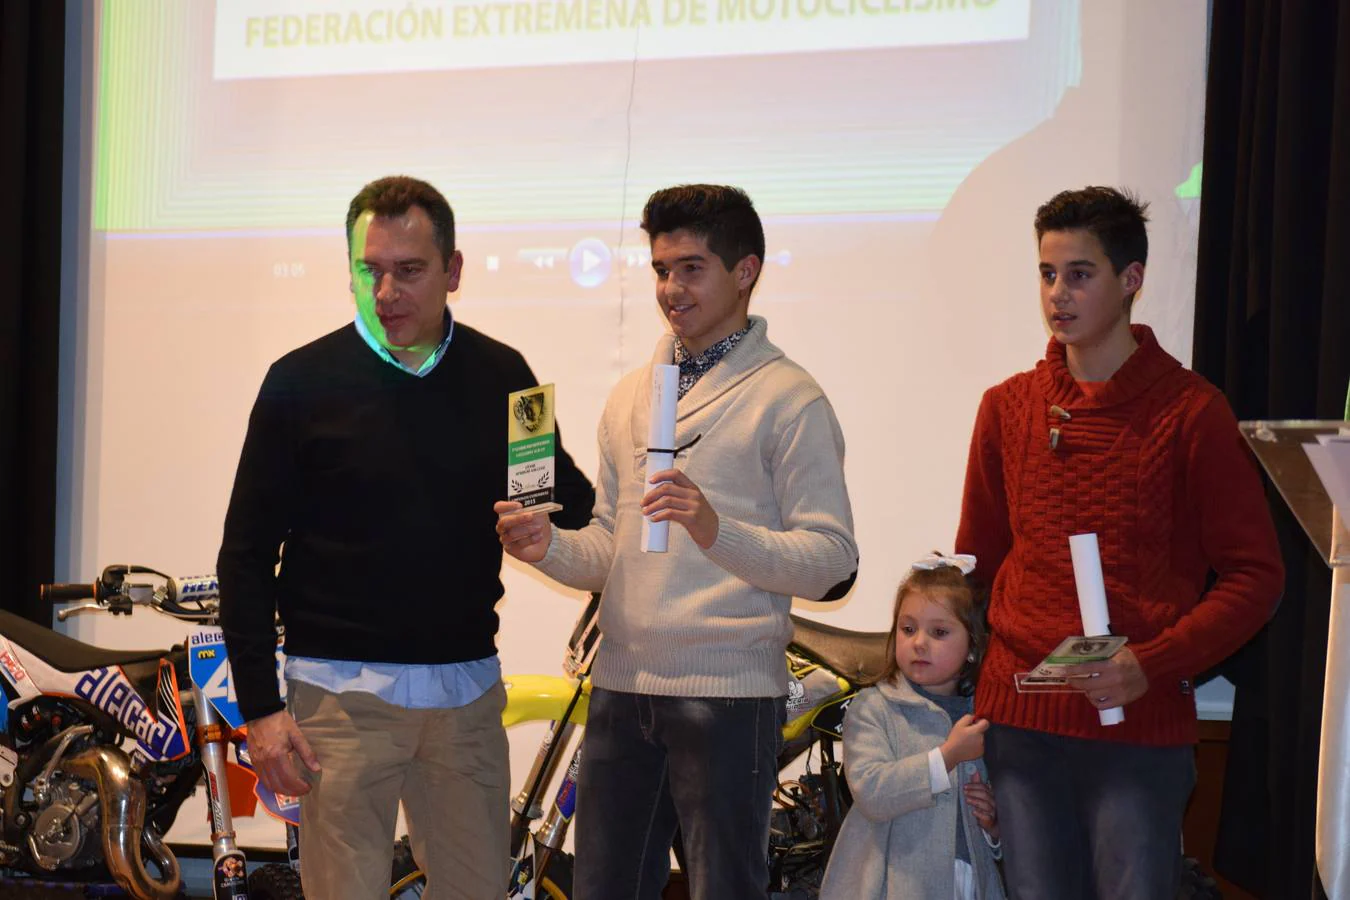 Gala del Motociclismo Extremeño 2015